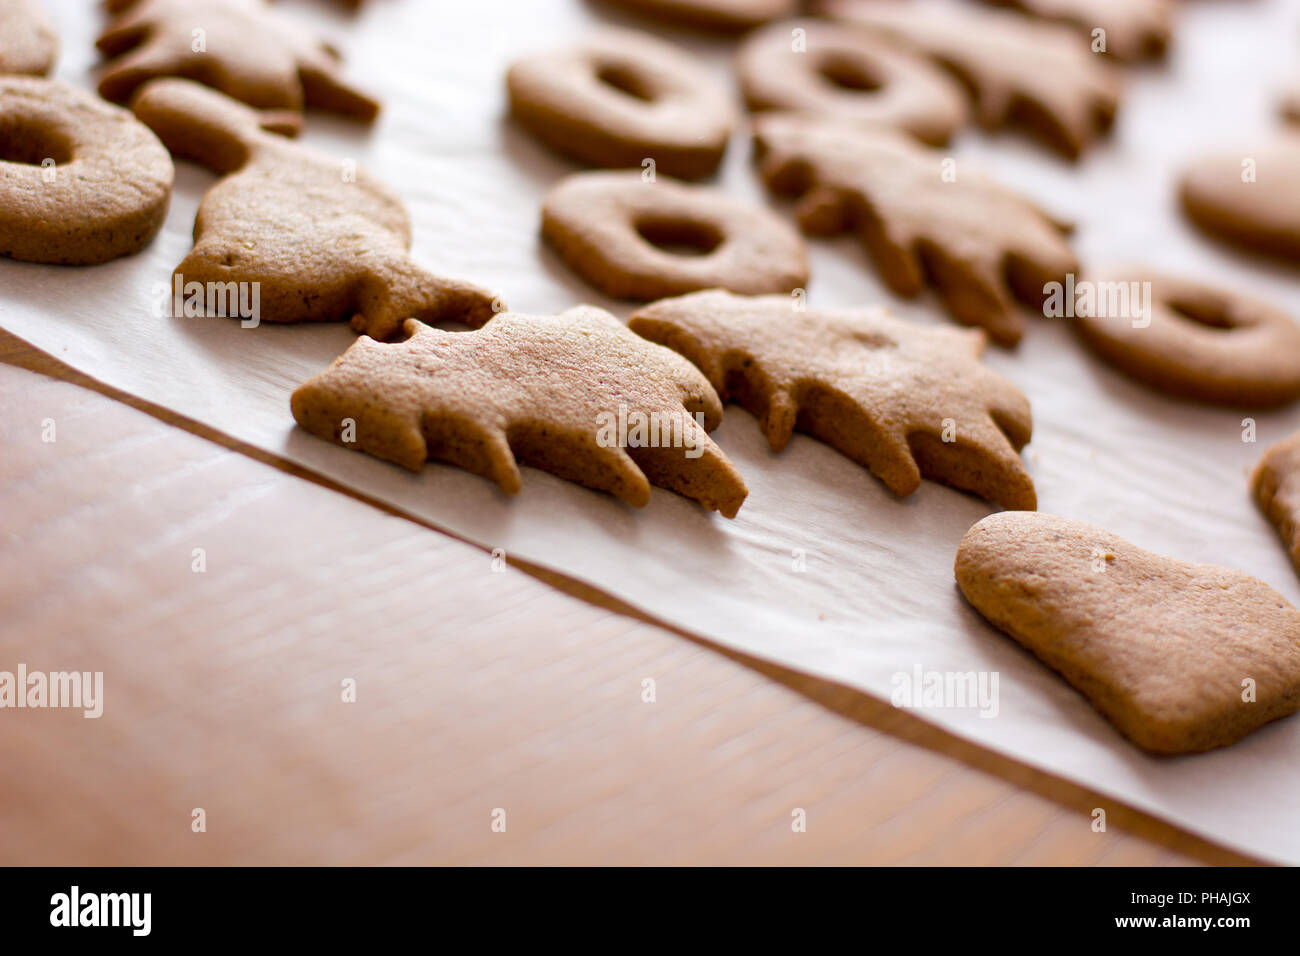 Pasqua al forno gingerbread cookie sulla piastra. Foto Stock